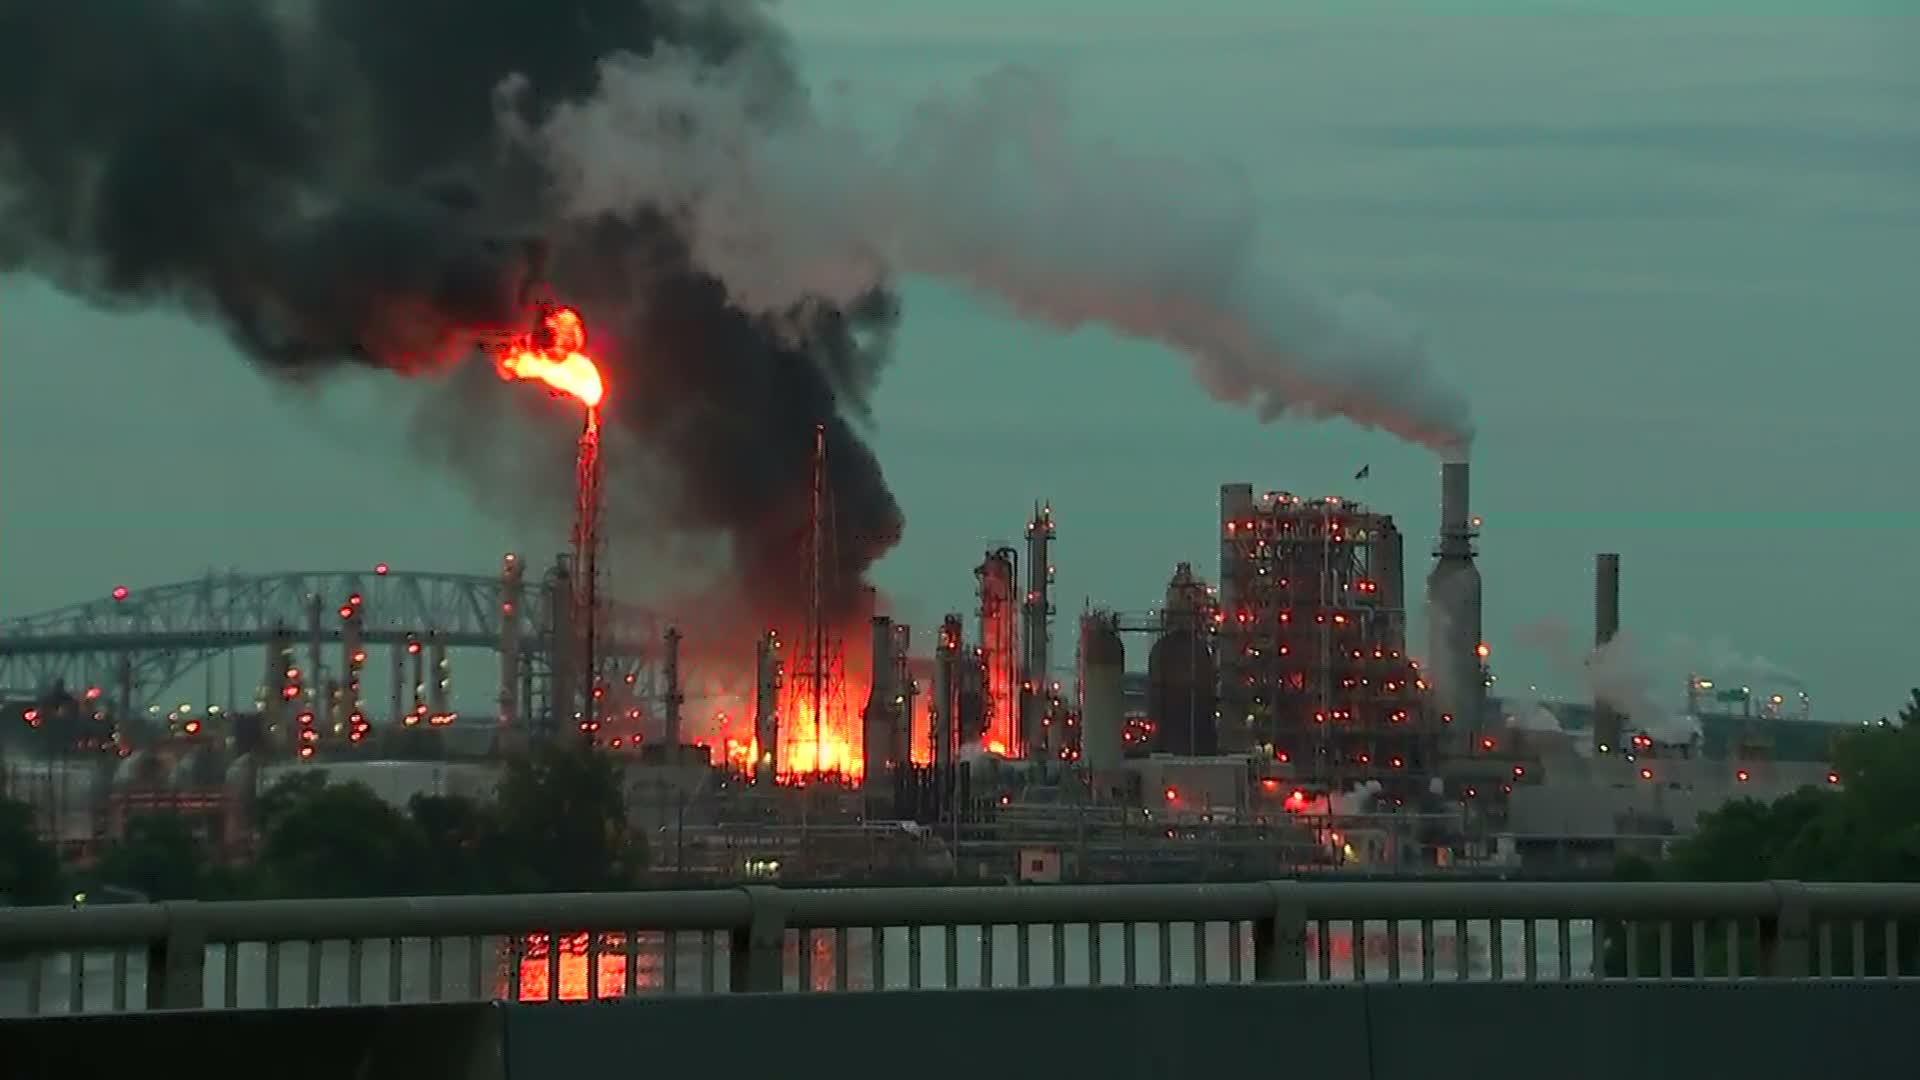 Philadelphia refinery fire: Explosion heard after blaze breaks out | CNN